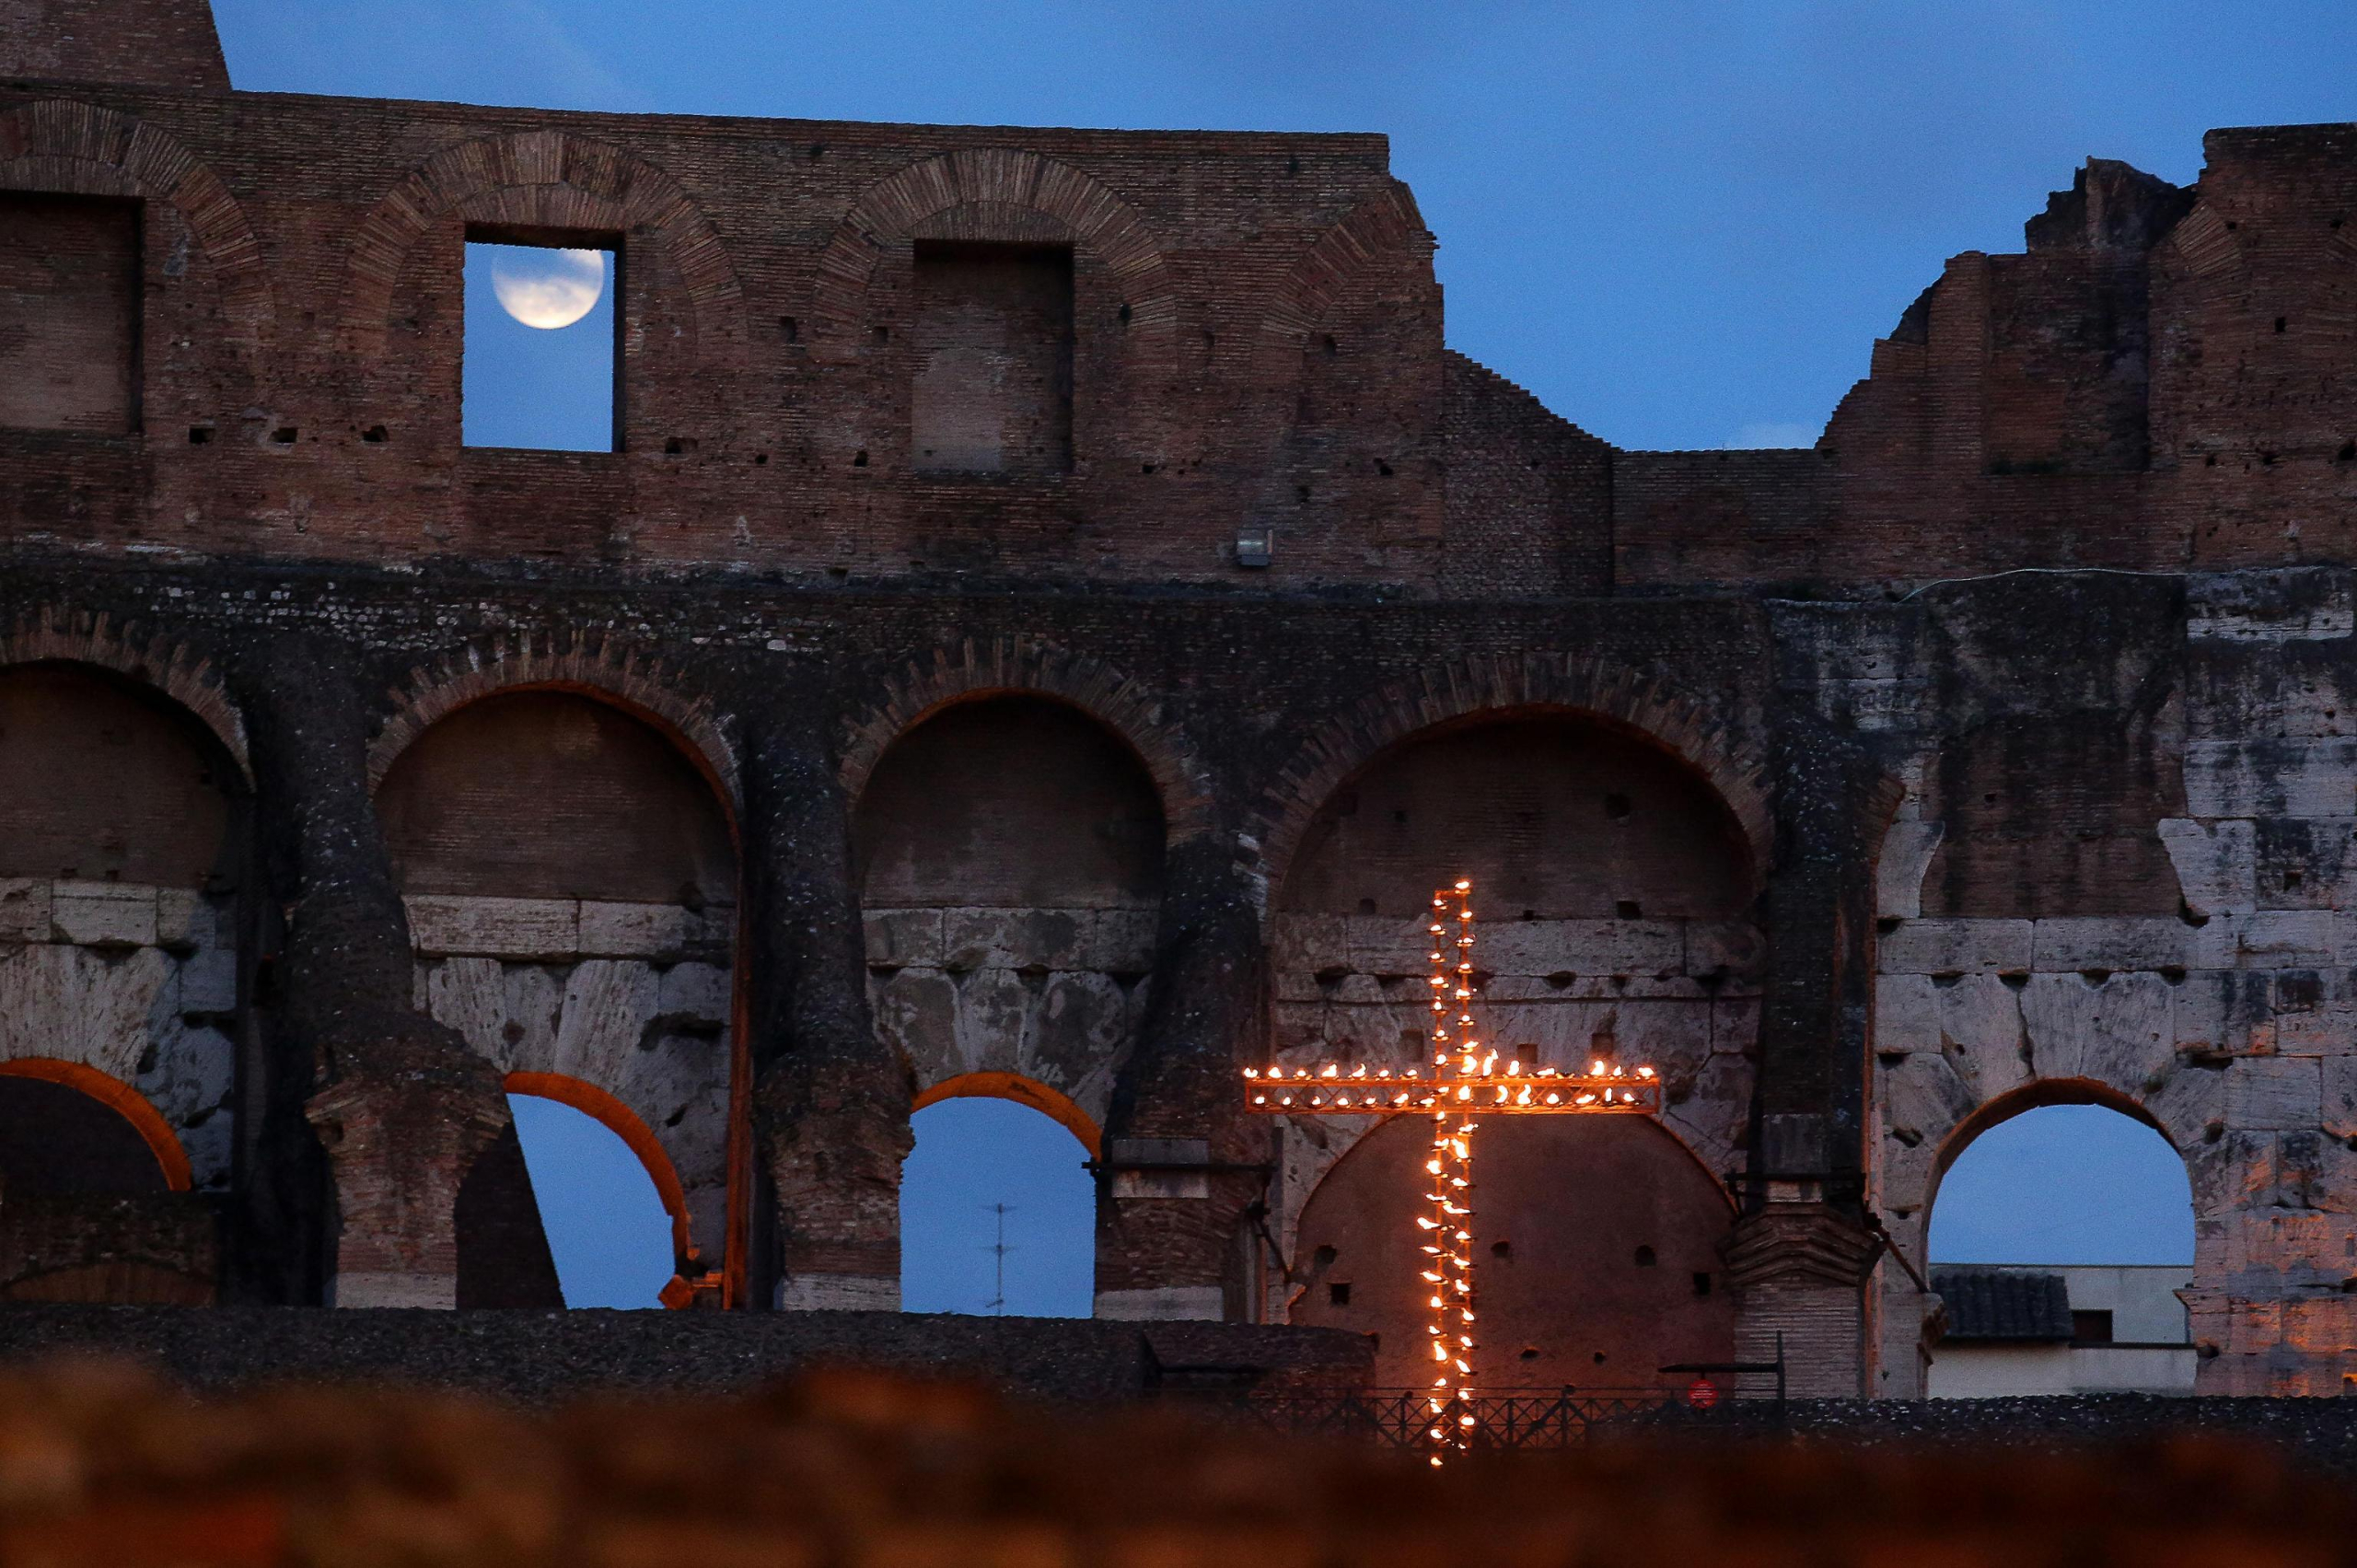 La luna piena e la croce accesa all'interno del Colosseo in occasione della Via Crucis, Roma, 3 aprile 2015.
ANSA/ALESSANDRO DI MEO